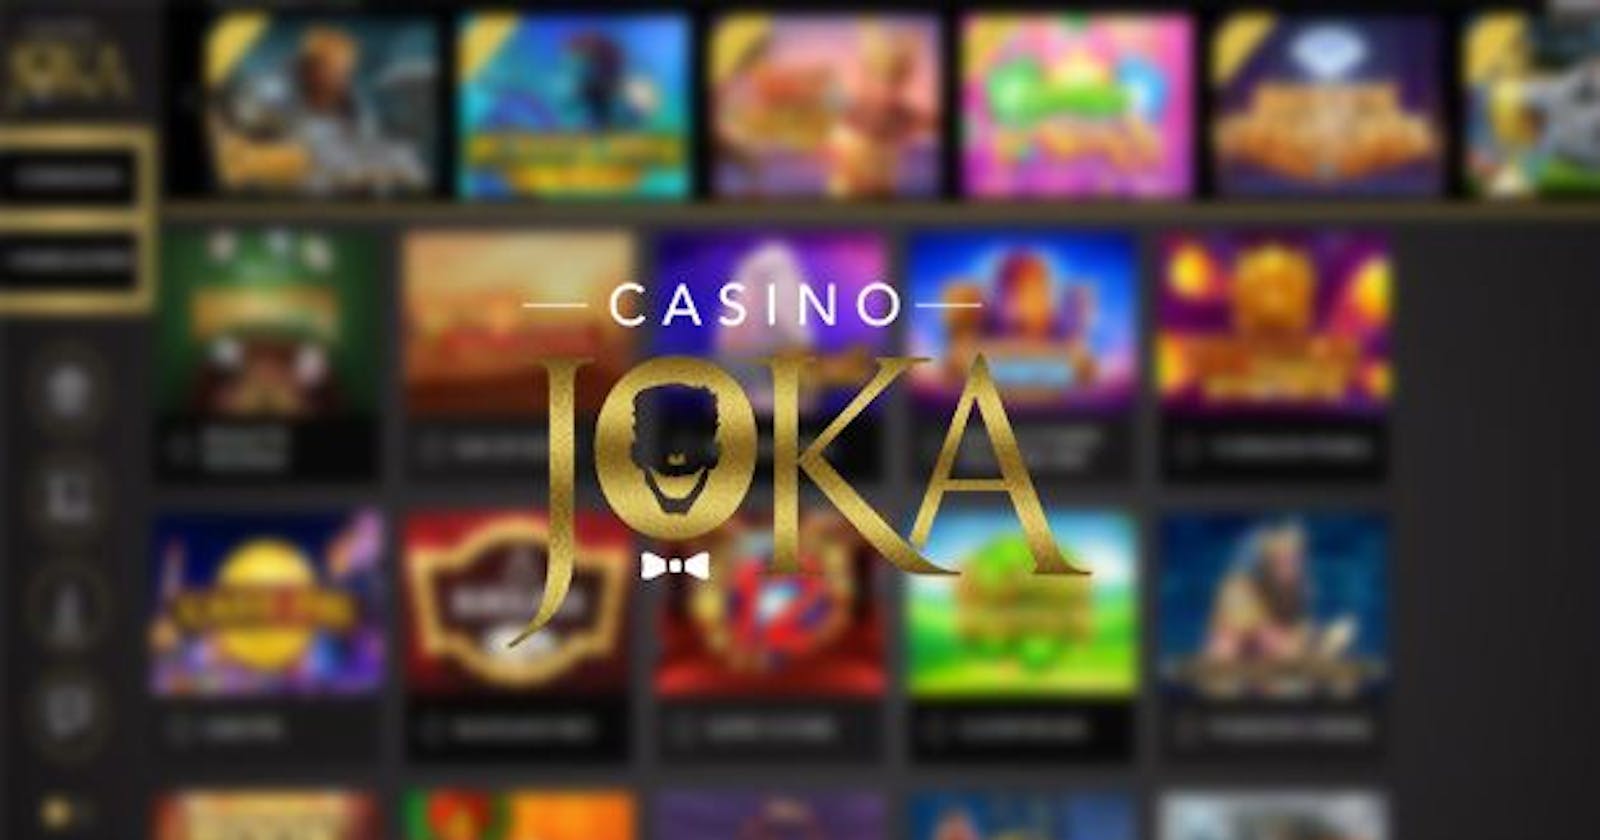 Votre série de gains commence maintenant : Rejoignez le Joka Casino en ligne !